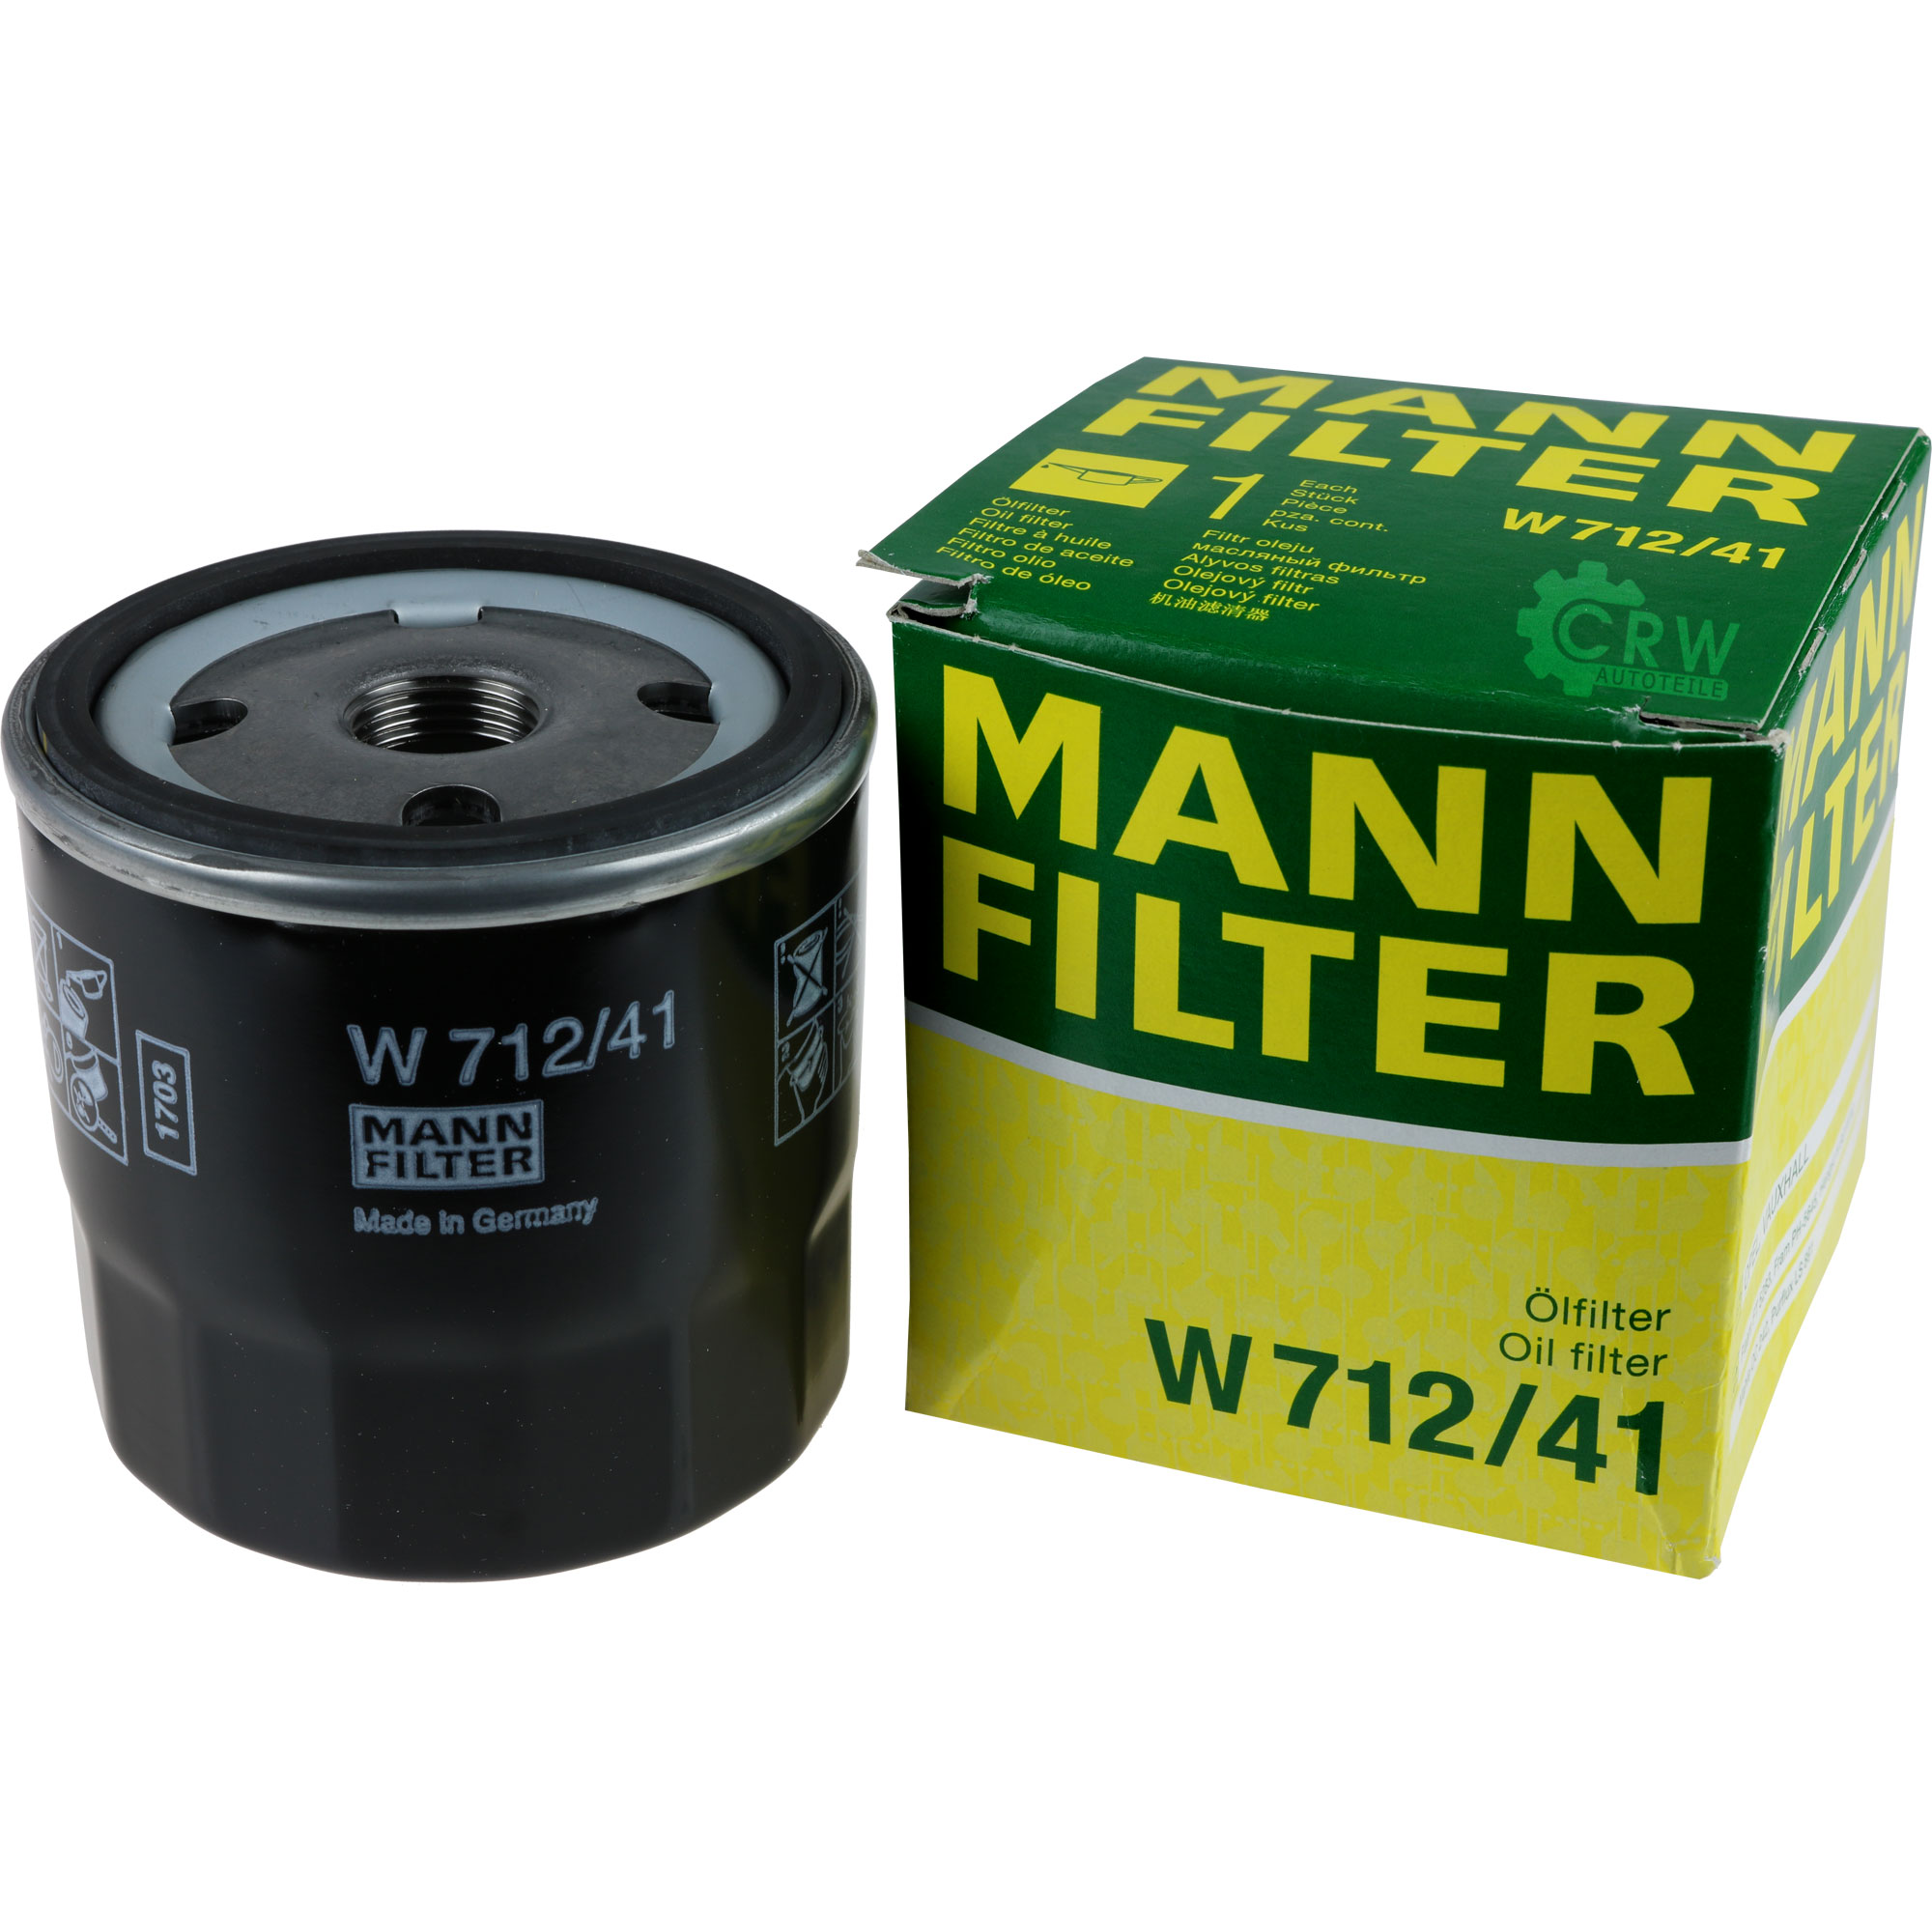 MANN-FILTER Ölfilter W 712 Anschraubfilter